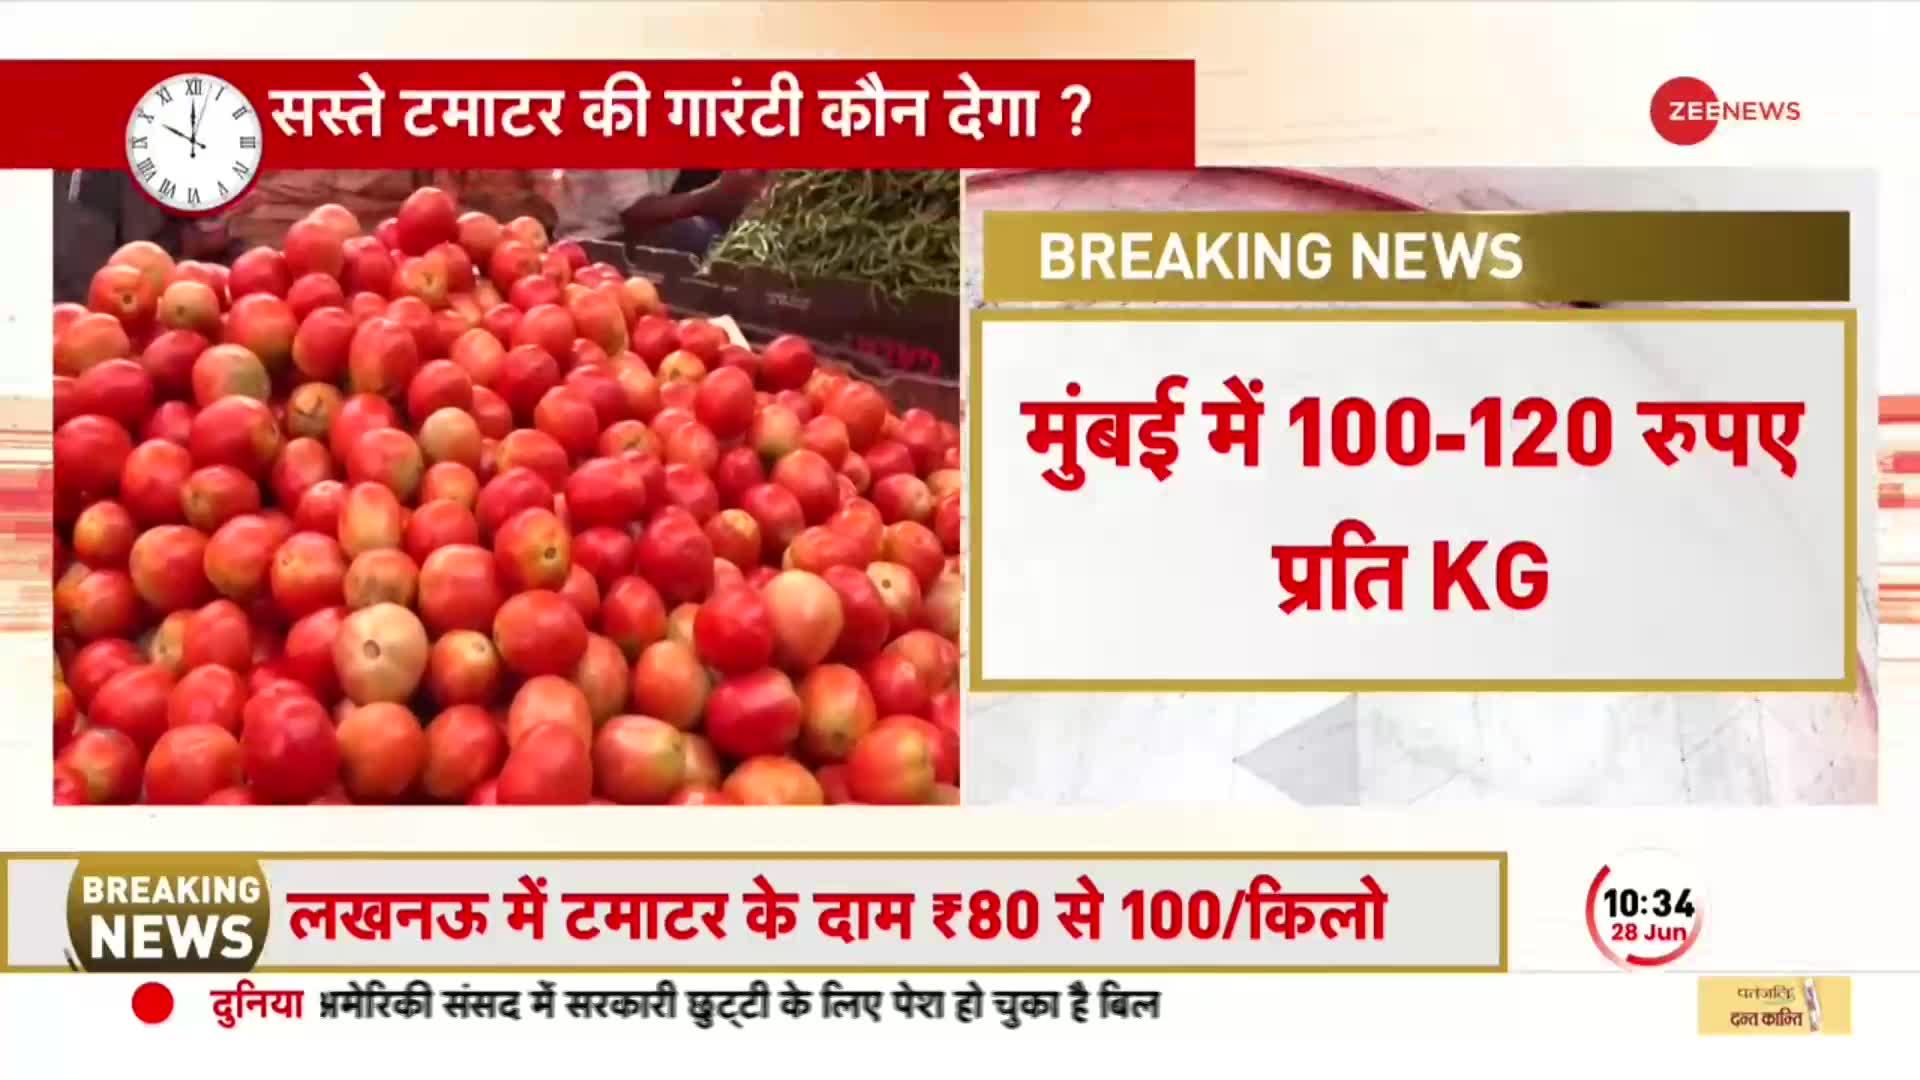 Tomato Price Today: देश के कई इलाकों में बारिश के कारण टमाटर हुआ महंगा, जानें कहां कितना रेट?